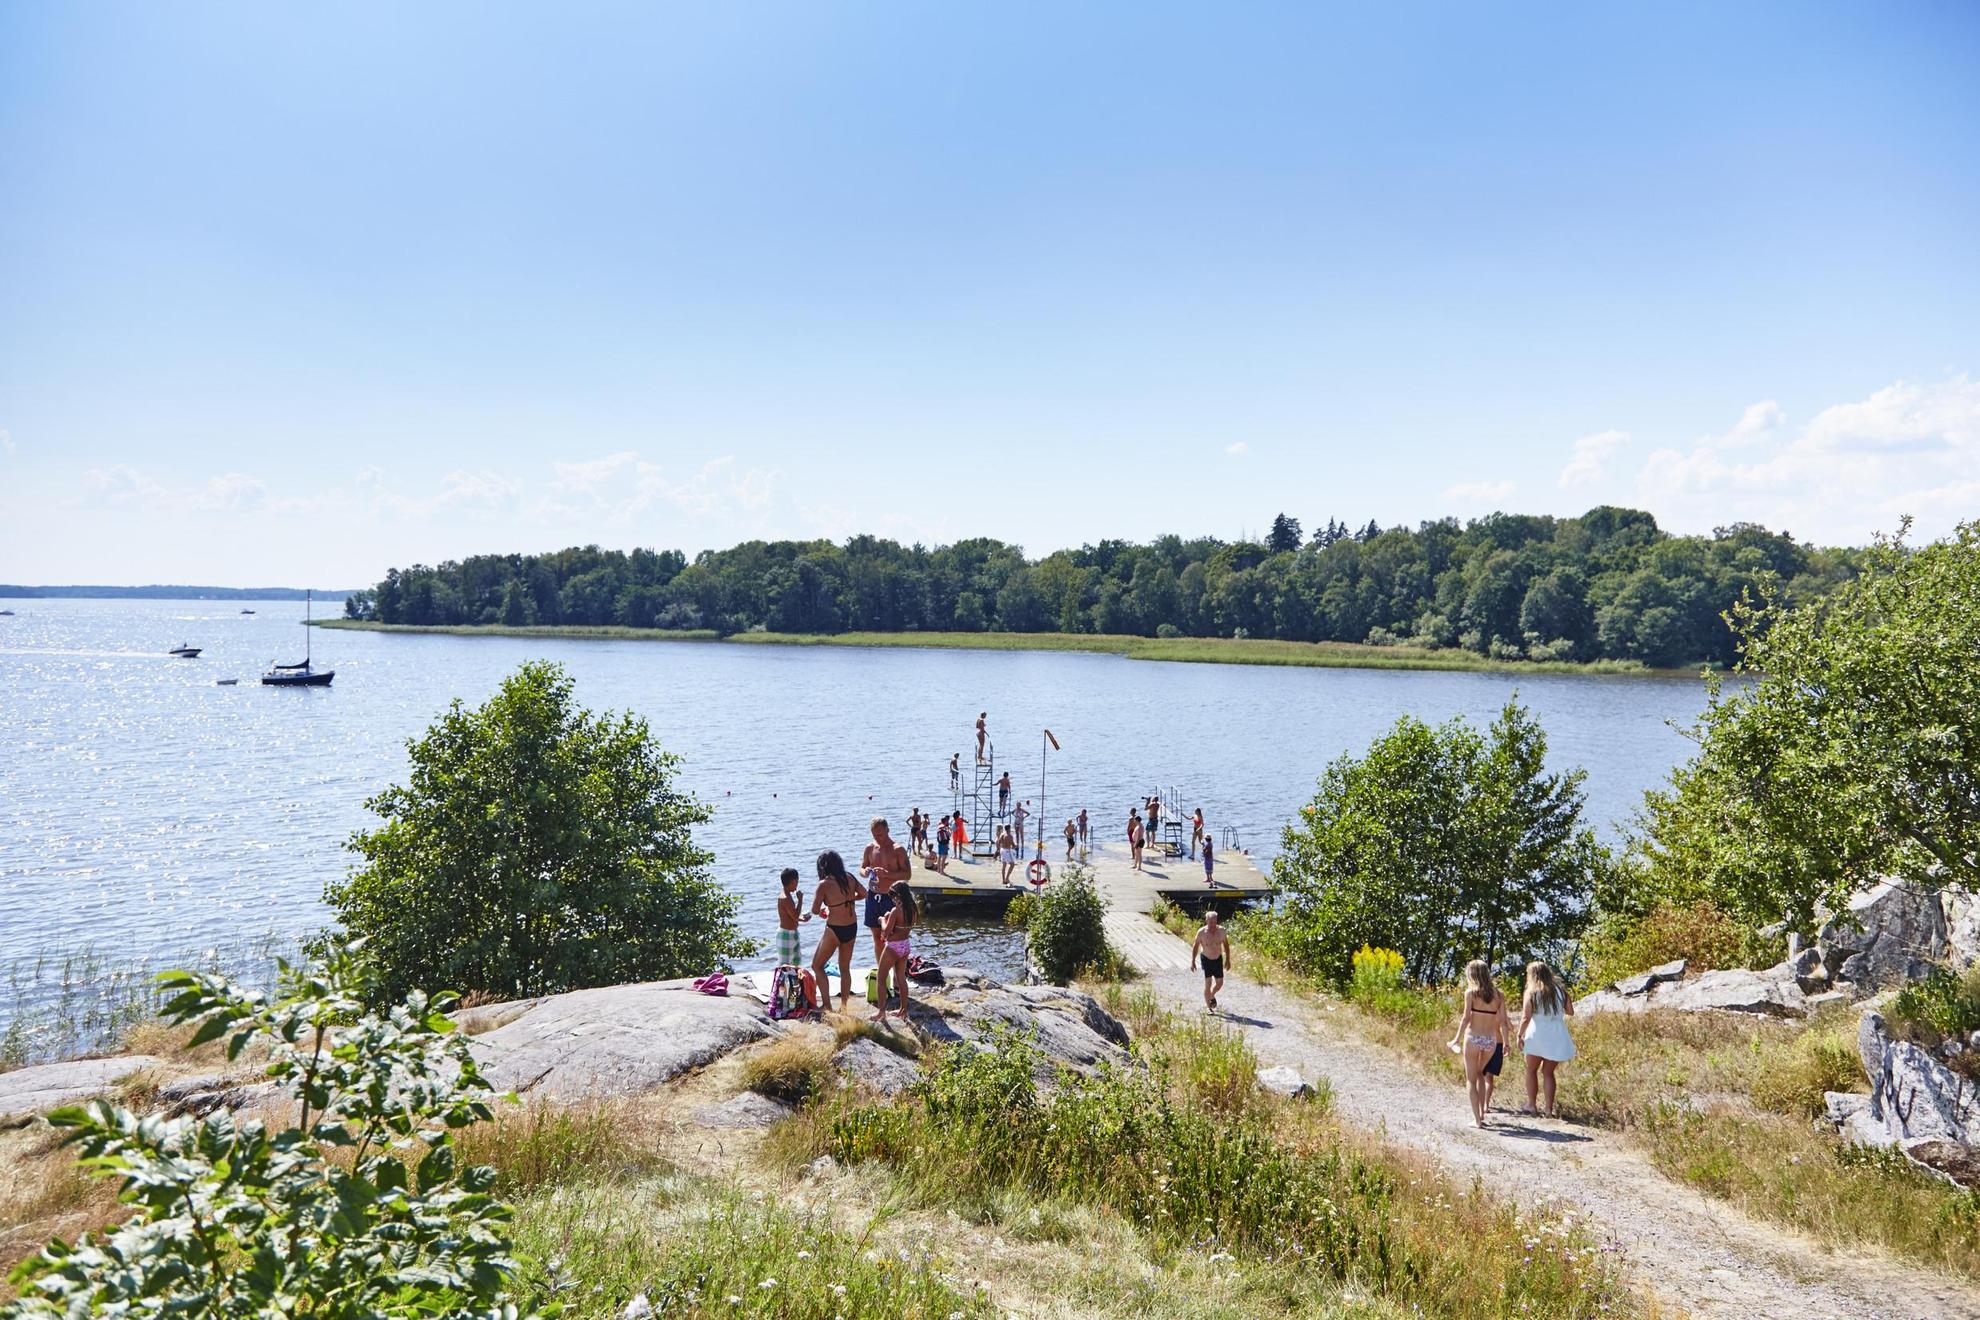 Des personnes se tiennent au bord d'un lac en été.